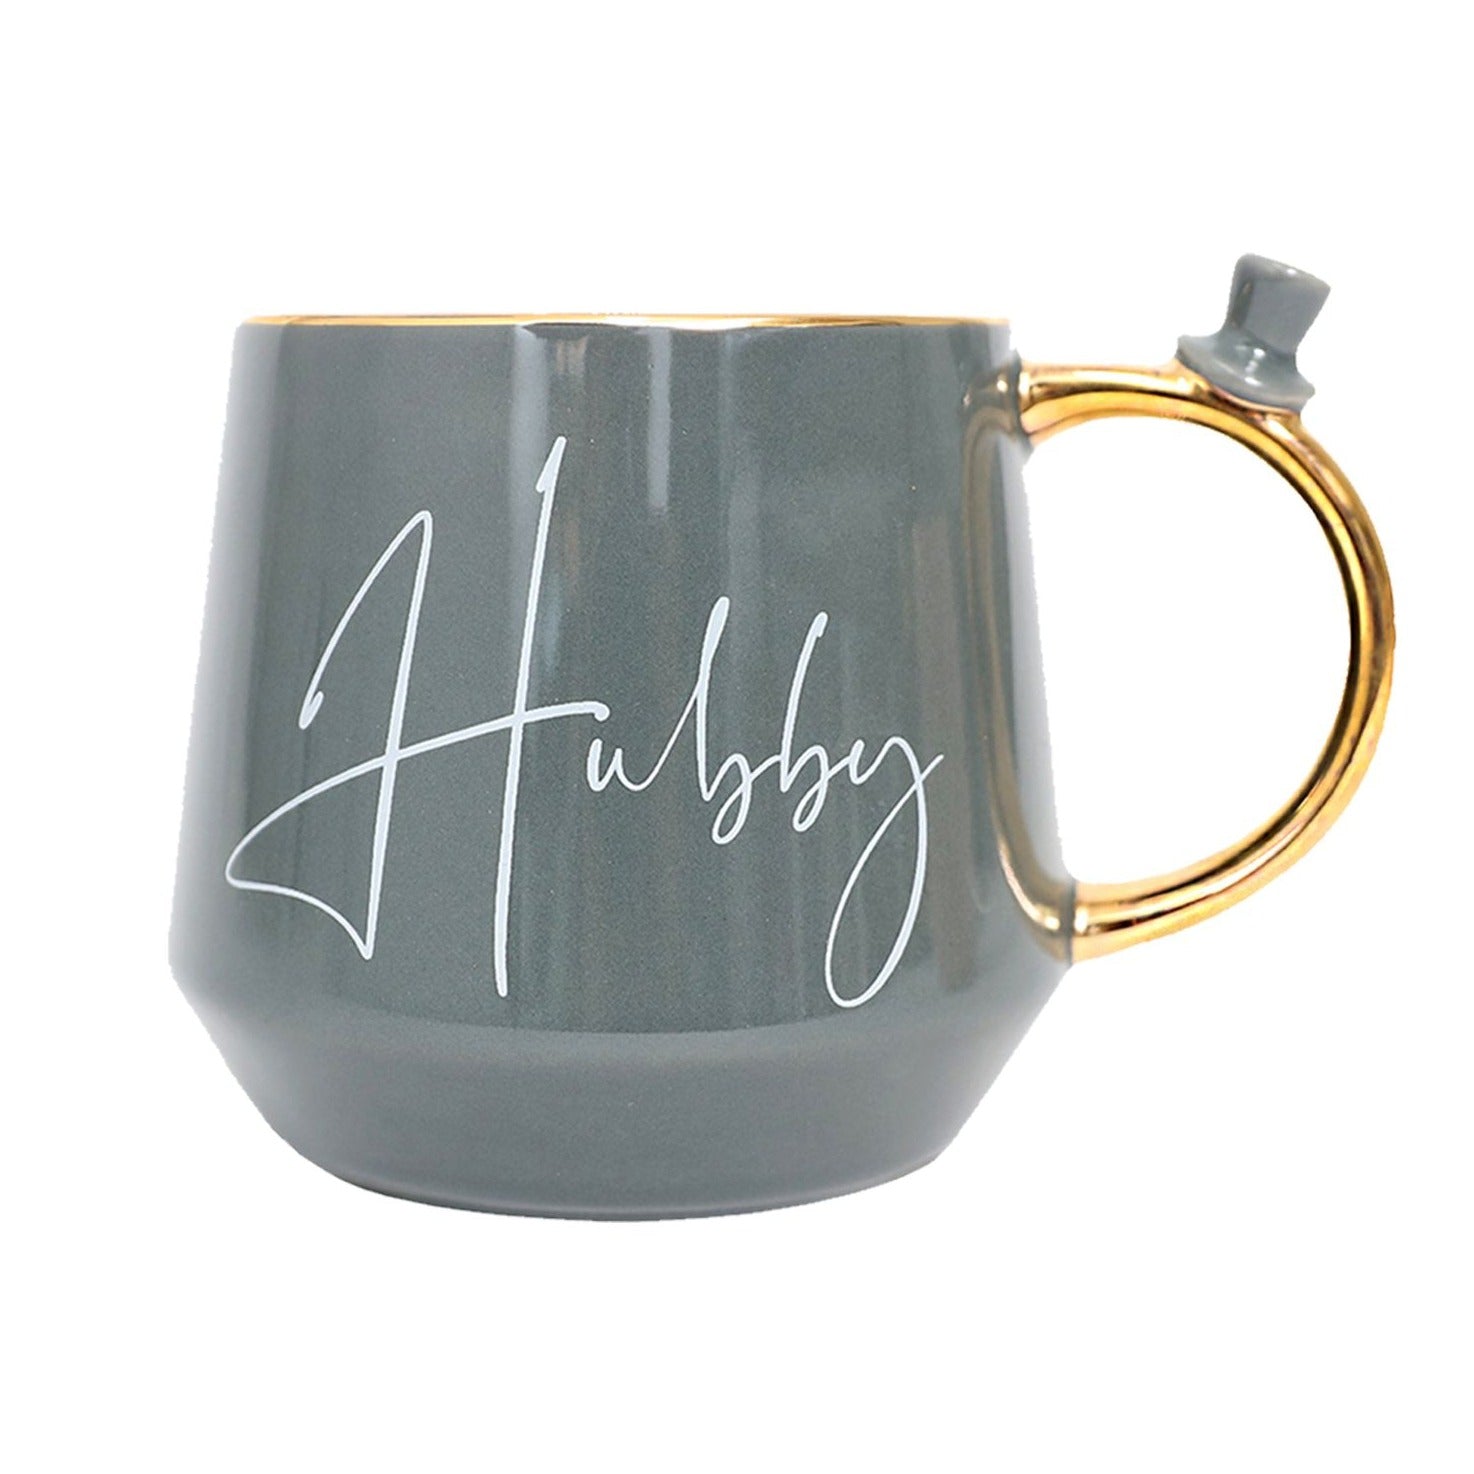 Hubby Mug